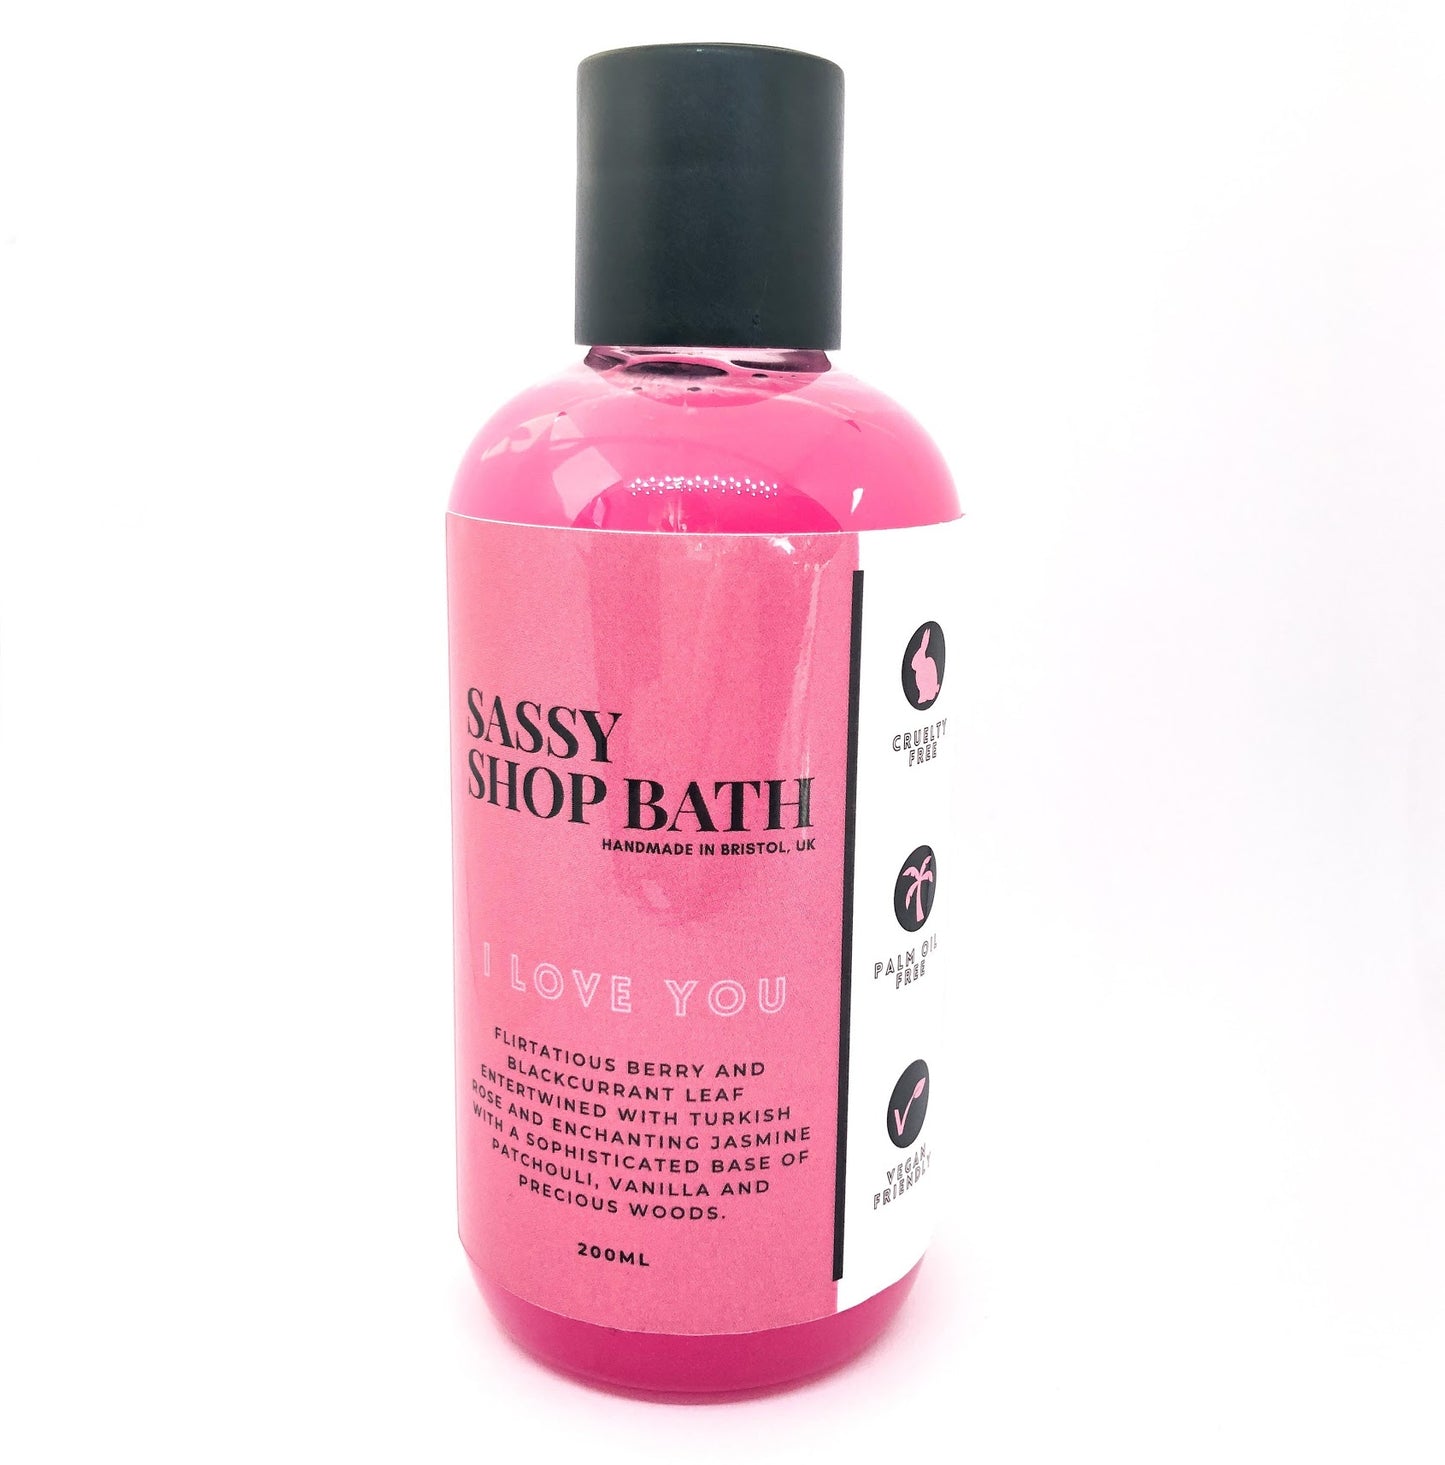 Sassy Shop Bath 3 in 1 Wash - I Love You, 200ml